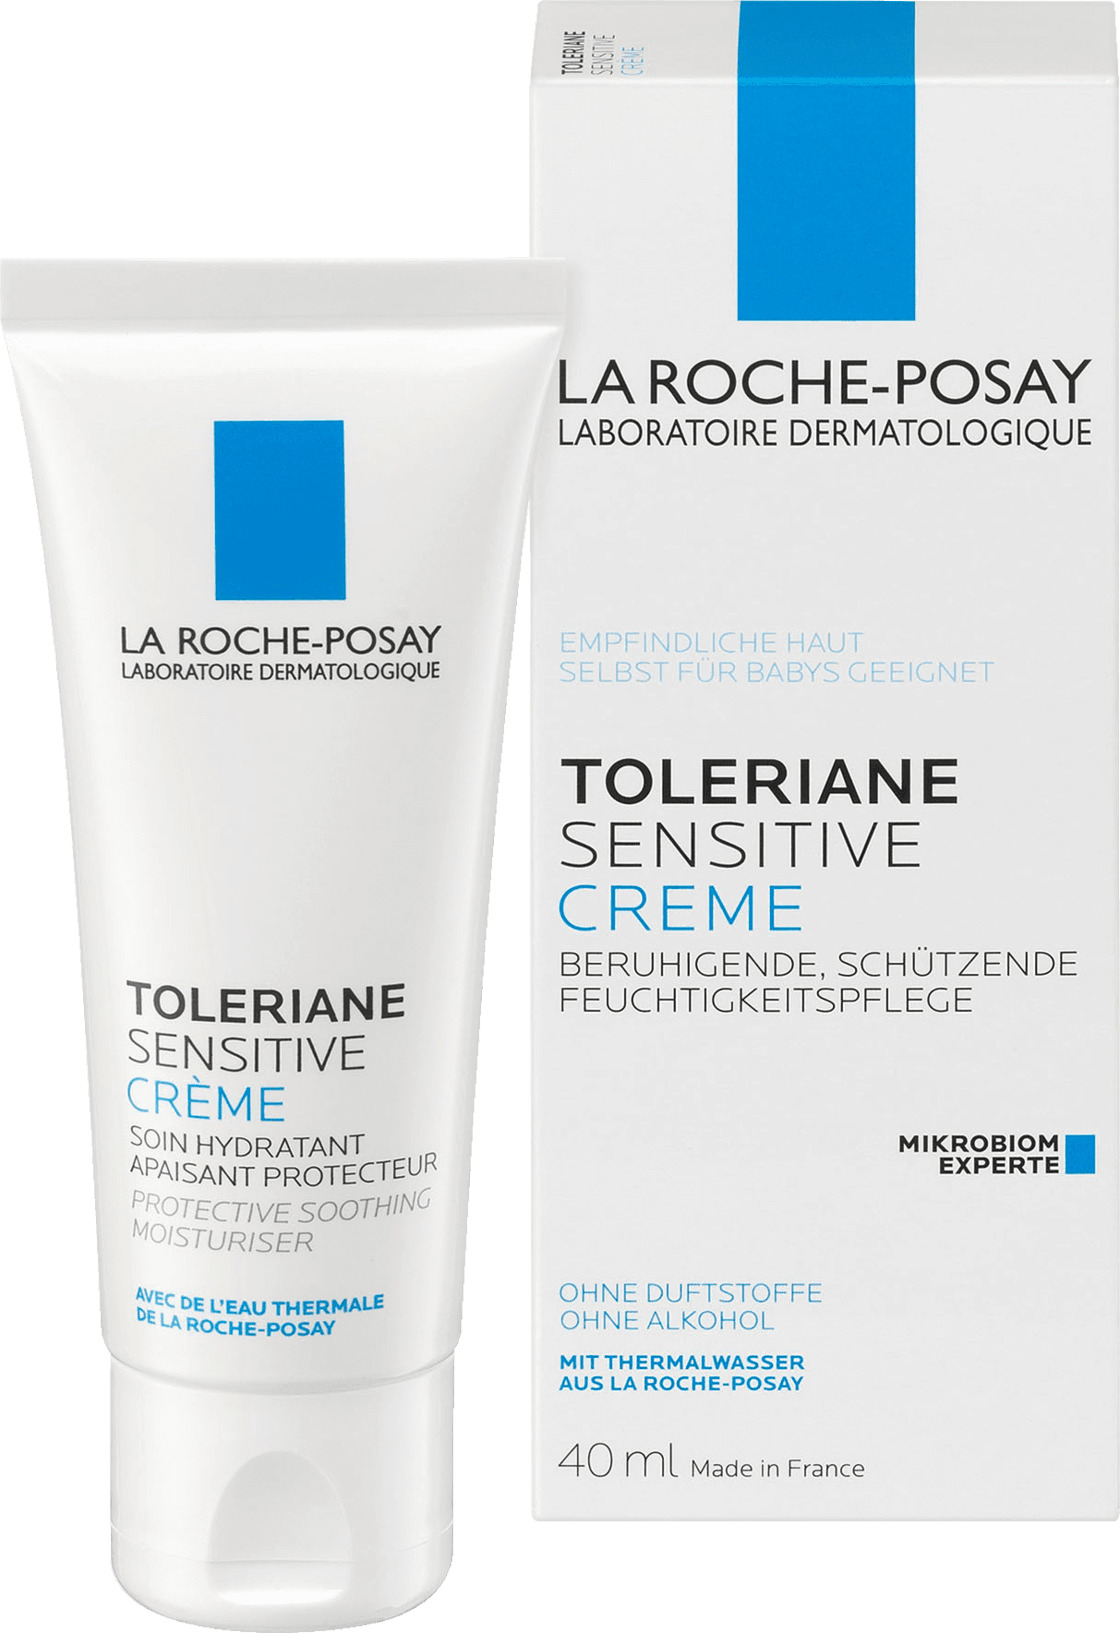 Køb La Roche-Posay Dagcreme Sensitive her! ✓